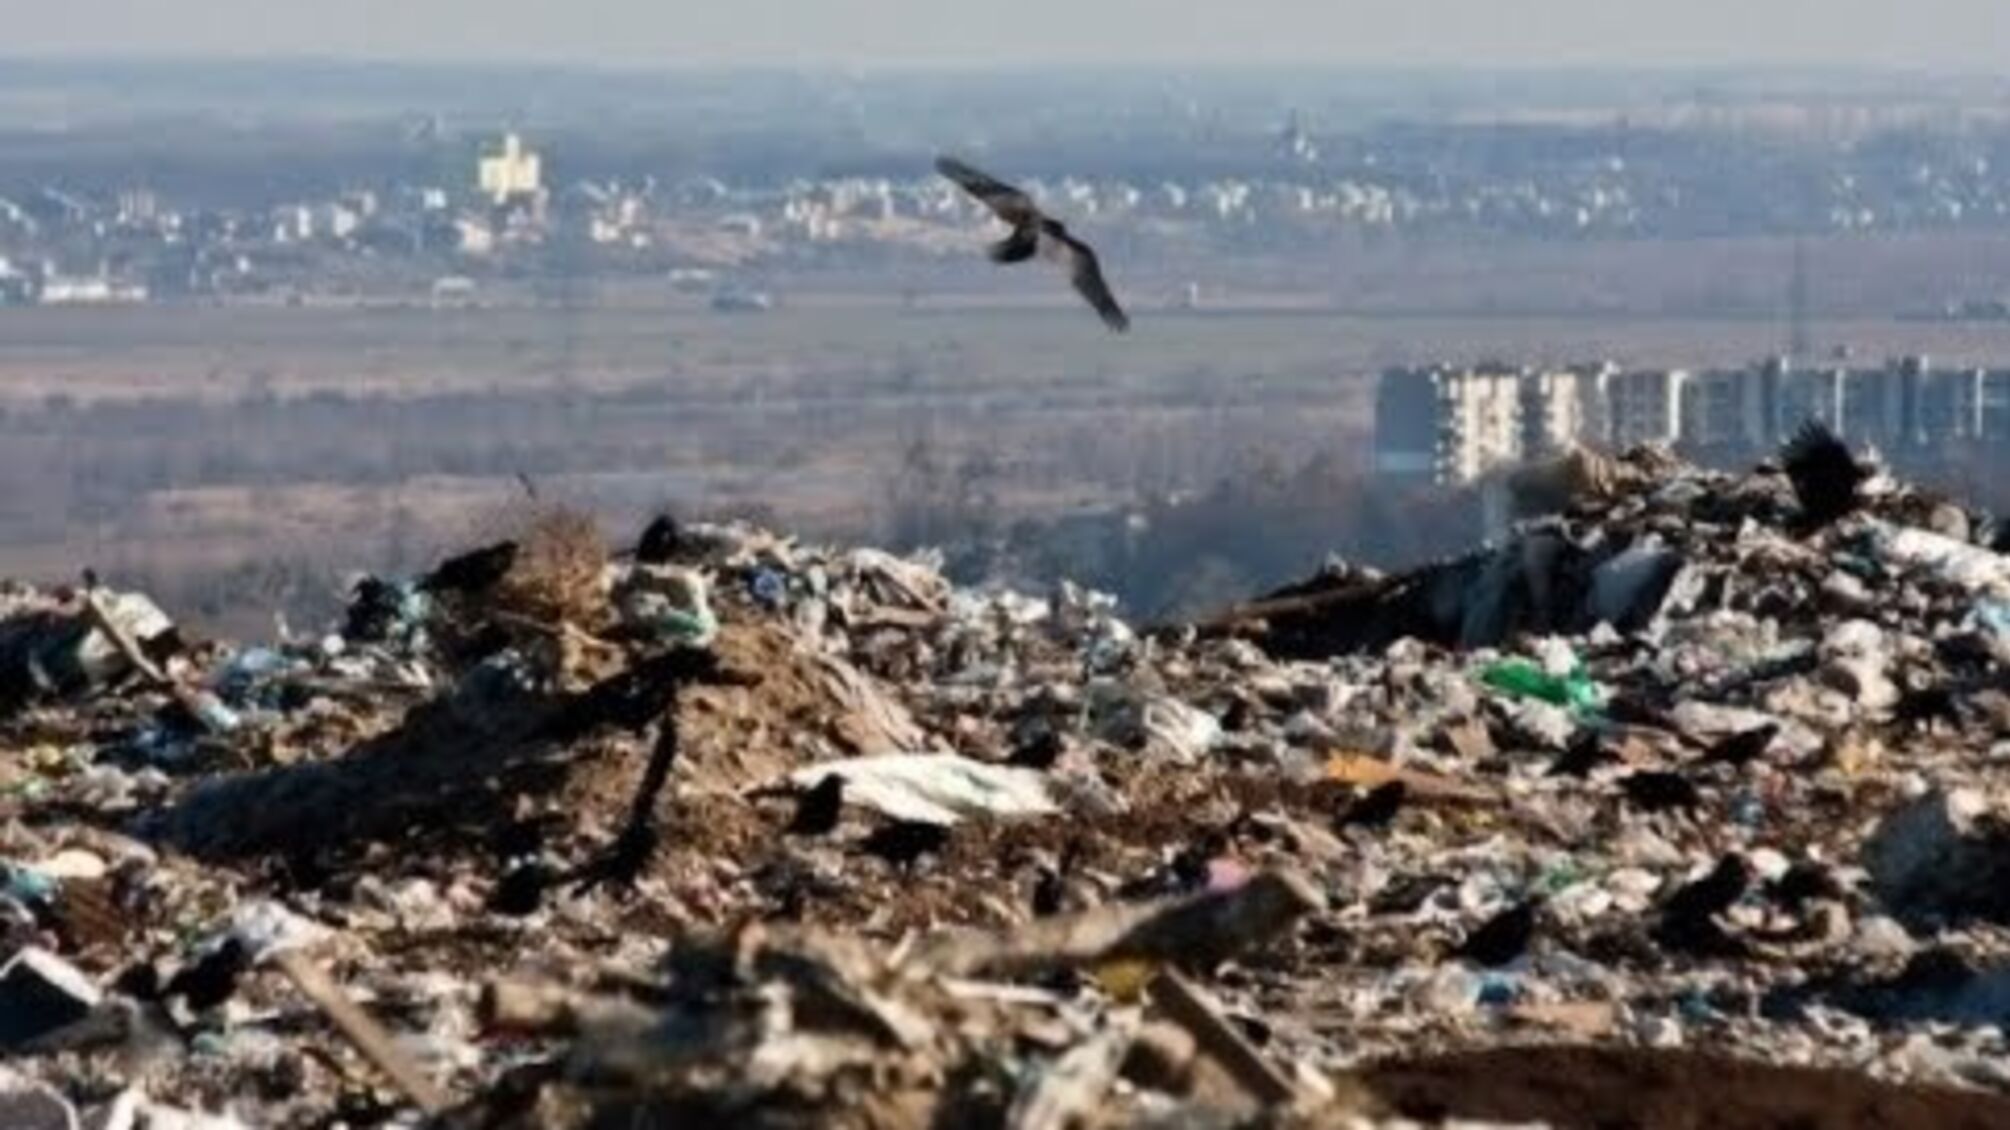 Після звернення активістів 'Стоп корупції' влада Святогірська ліквідувала незаконне сміттєзвалище